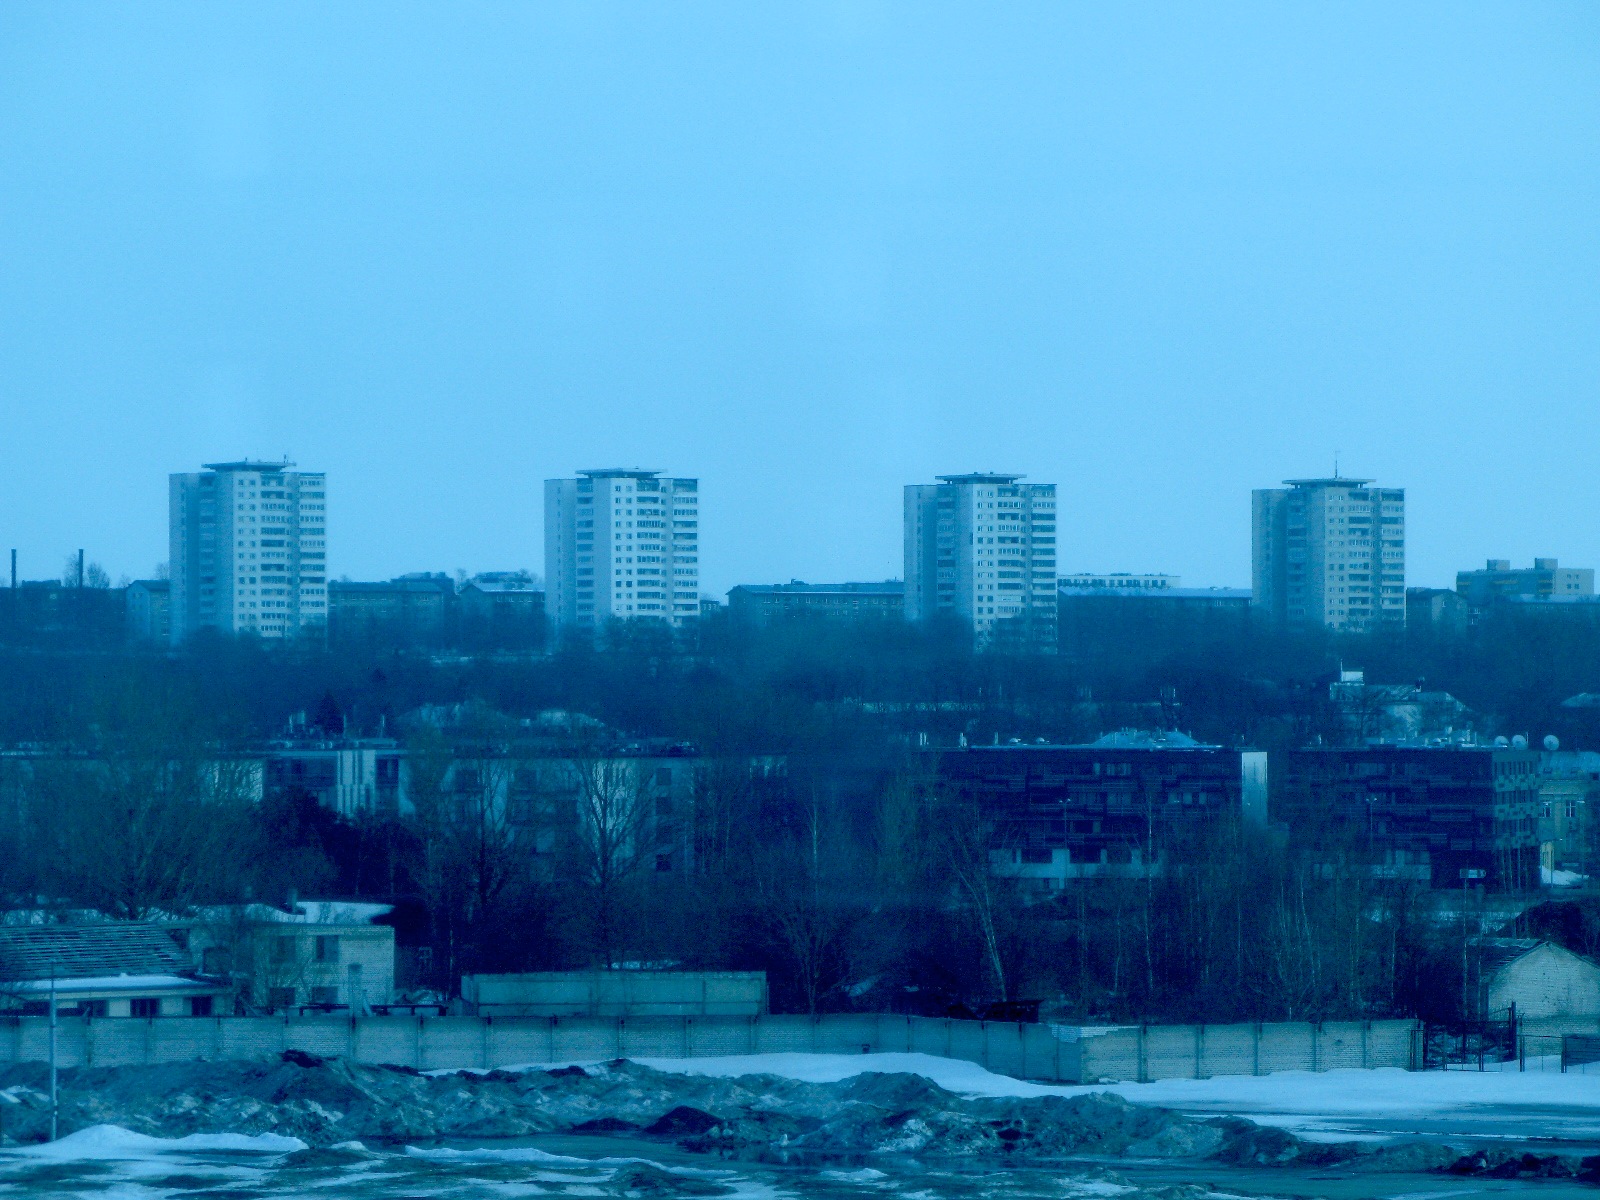 Al fondo, podemos ver un montón de edificios de la época soviética.